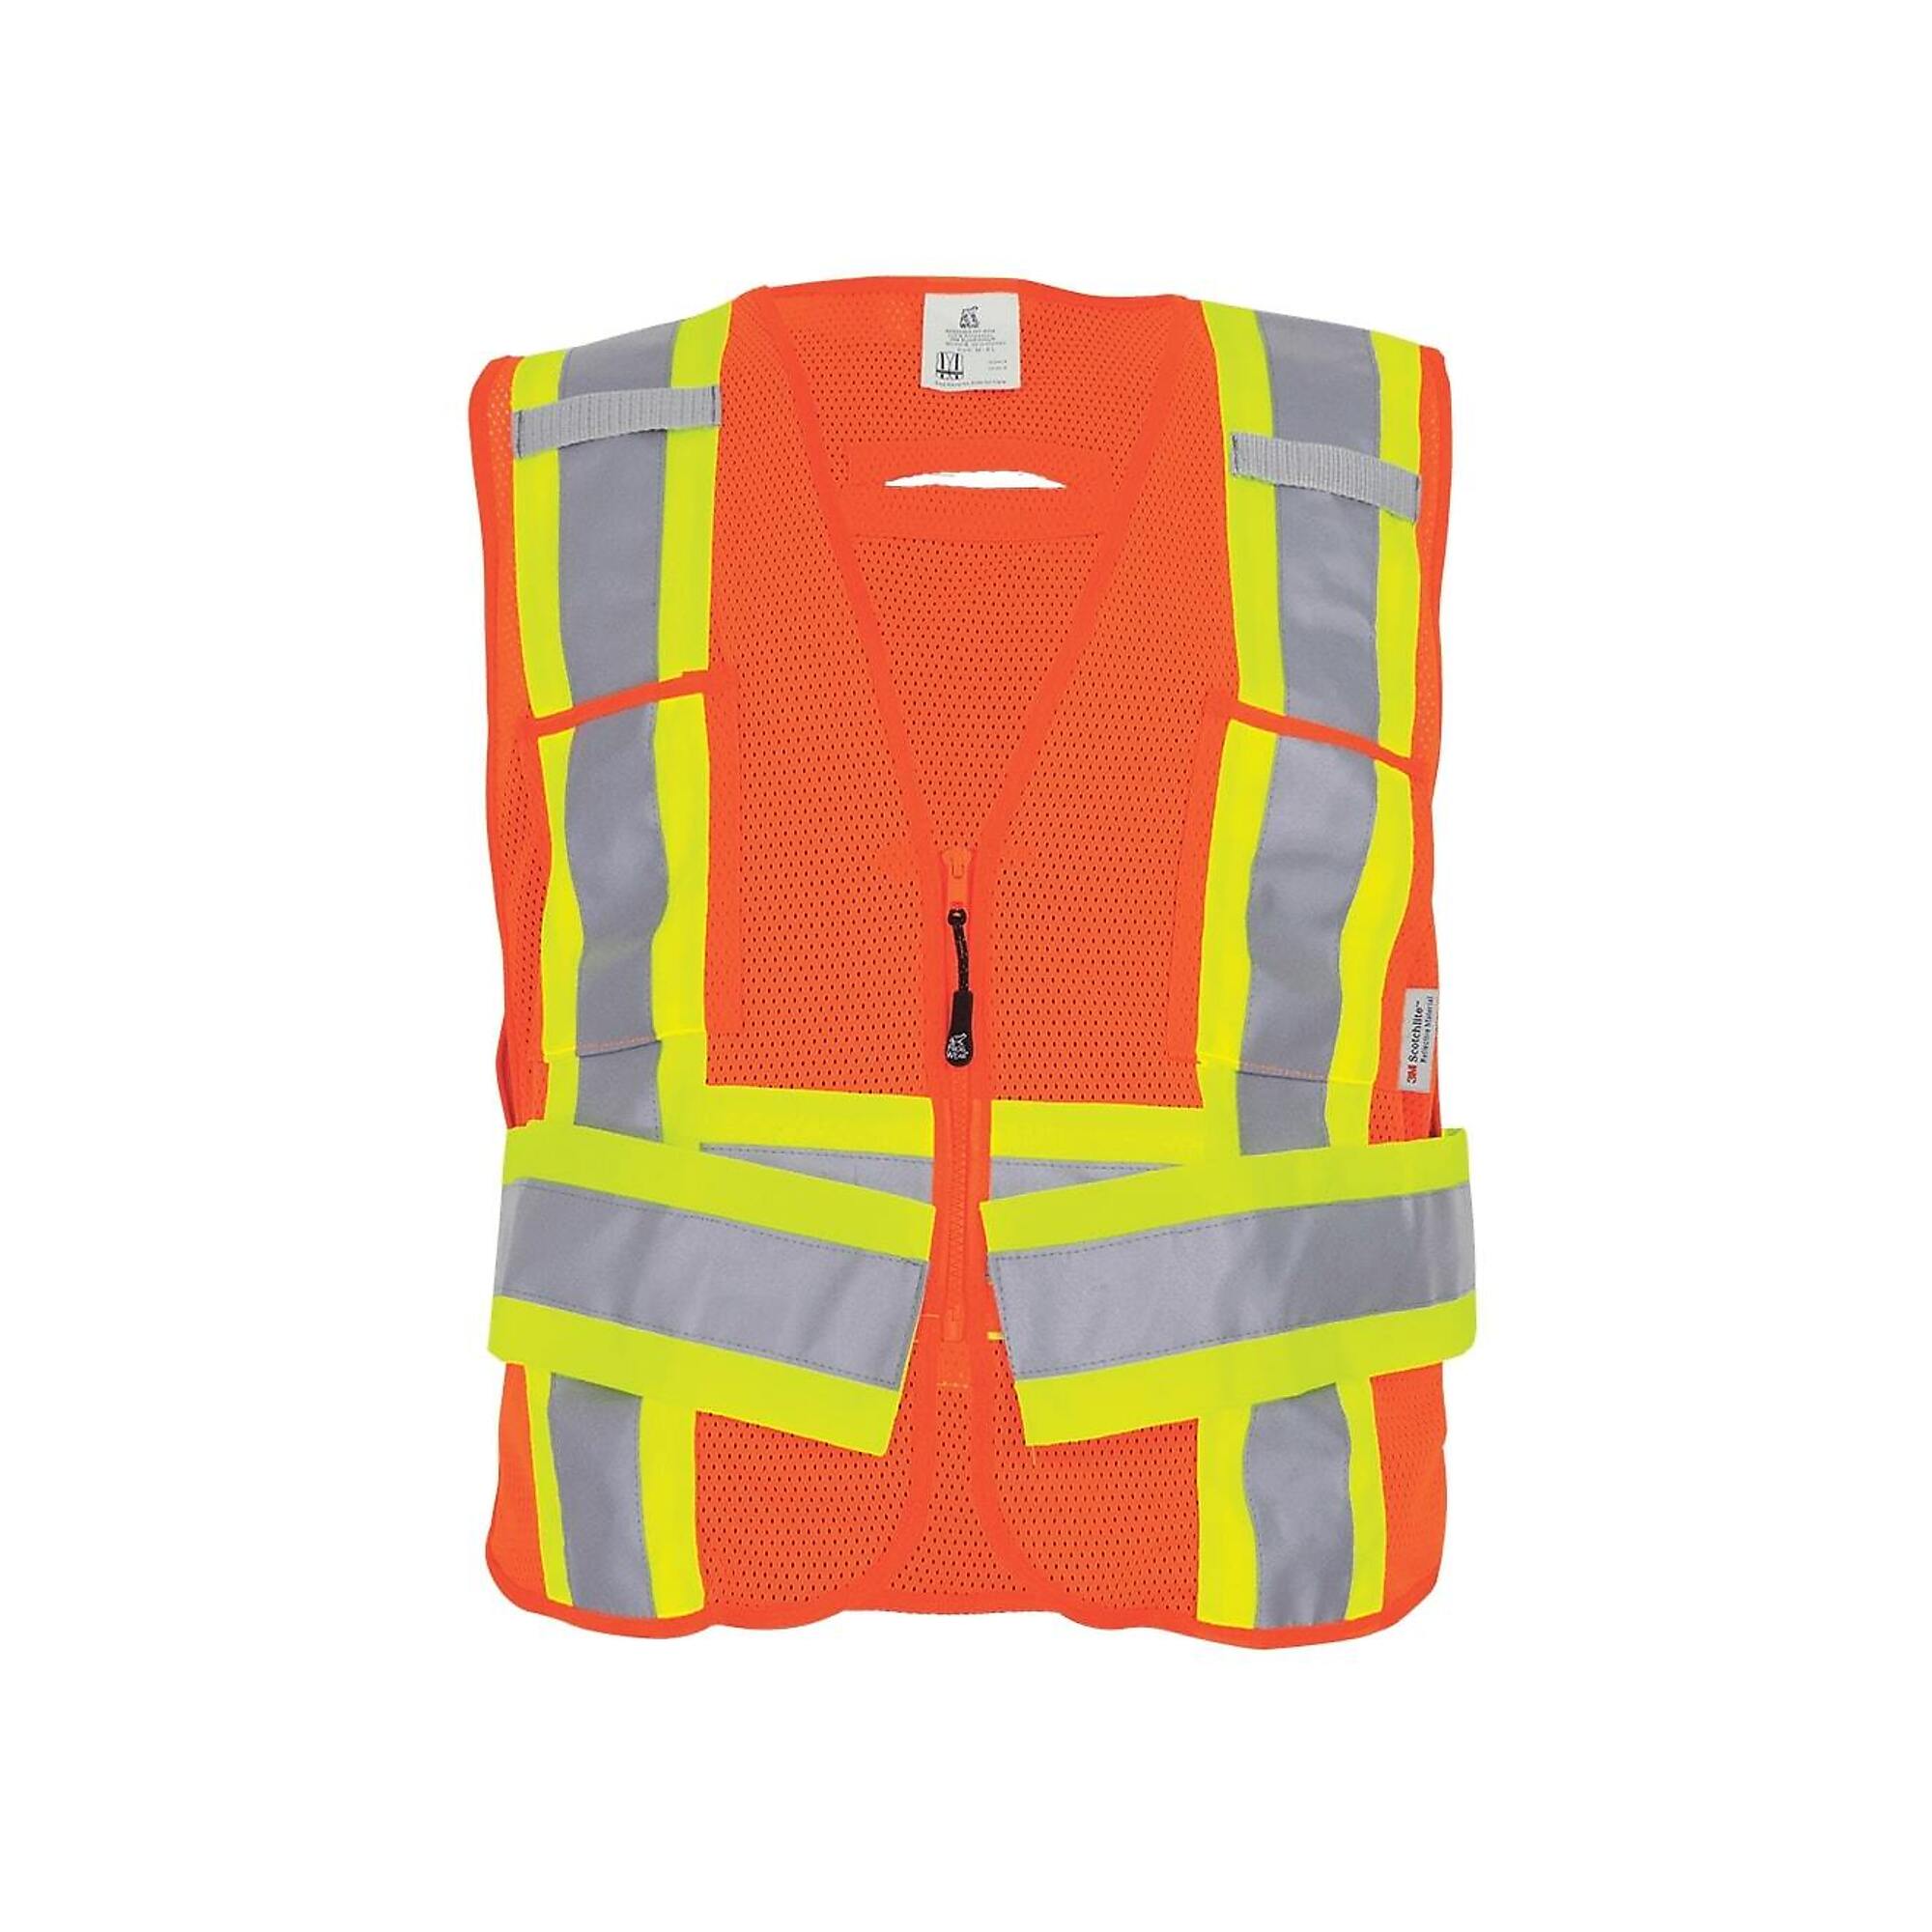 FrogWear, HV Orange Class 2 Adjustable, 6 Pocket, Mesh Vest, Size M, Color High-Visibility Orange, Model GLO-005ADJ-M-XL